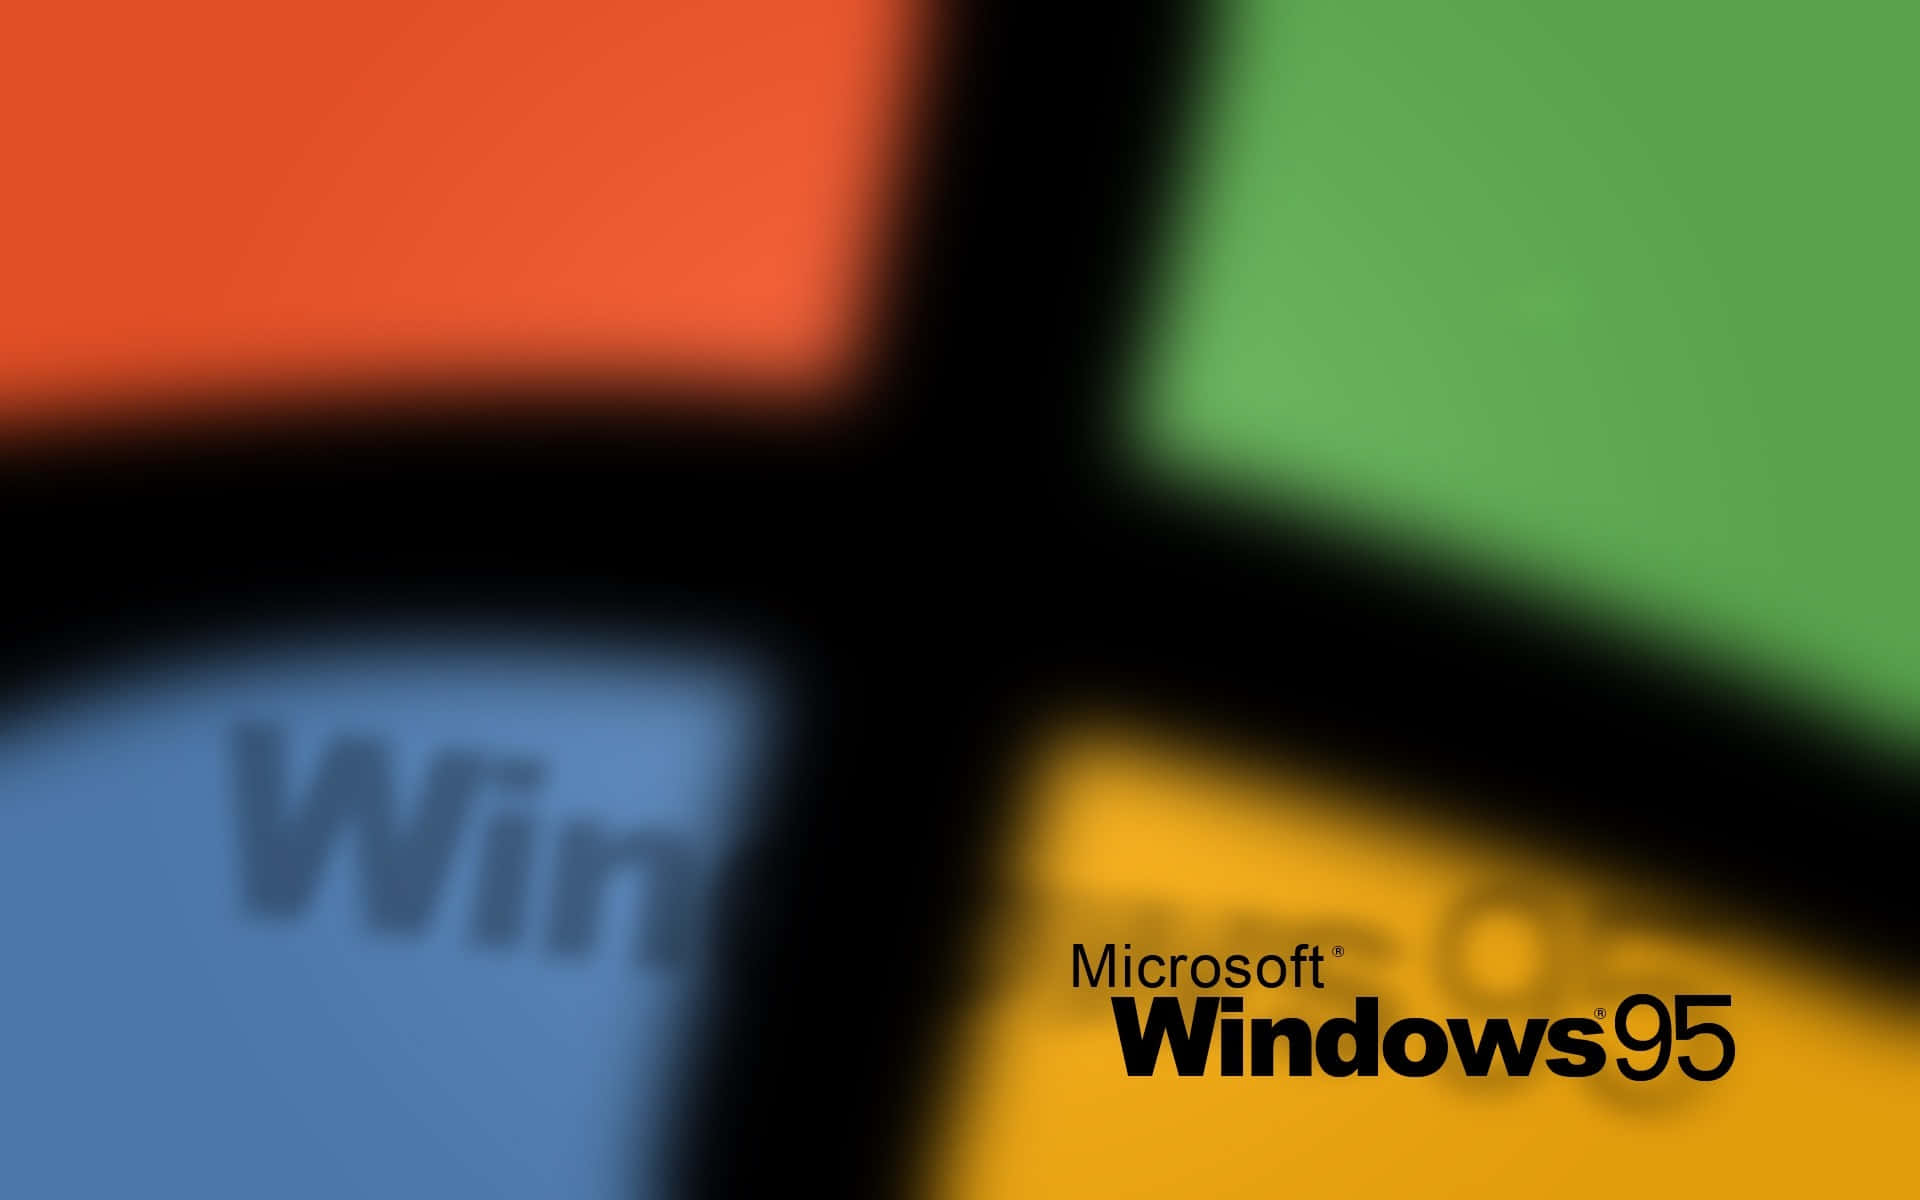 Återupplevden Nostalgiska Upplevelsen Av Windows 95 Genom Att Använda Det Som Bakgrundsbild På Din Dator Eller Mobiltelefon!